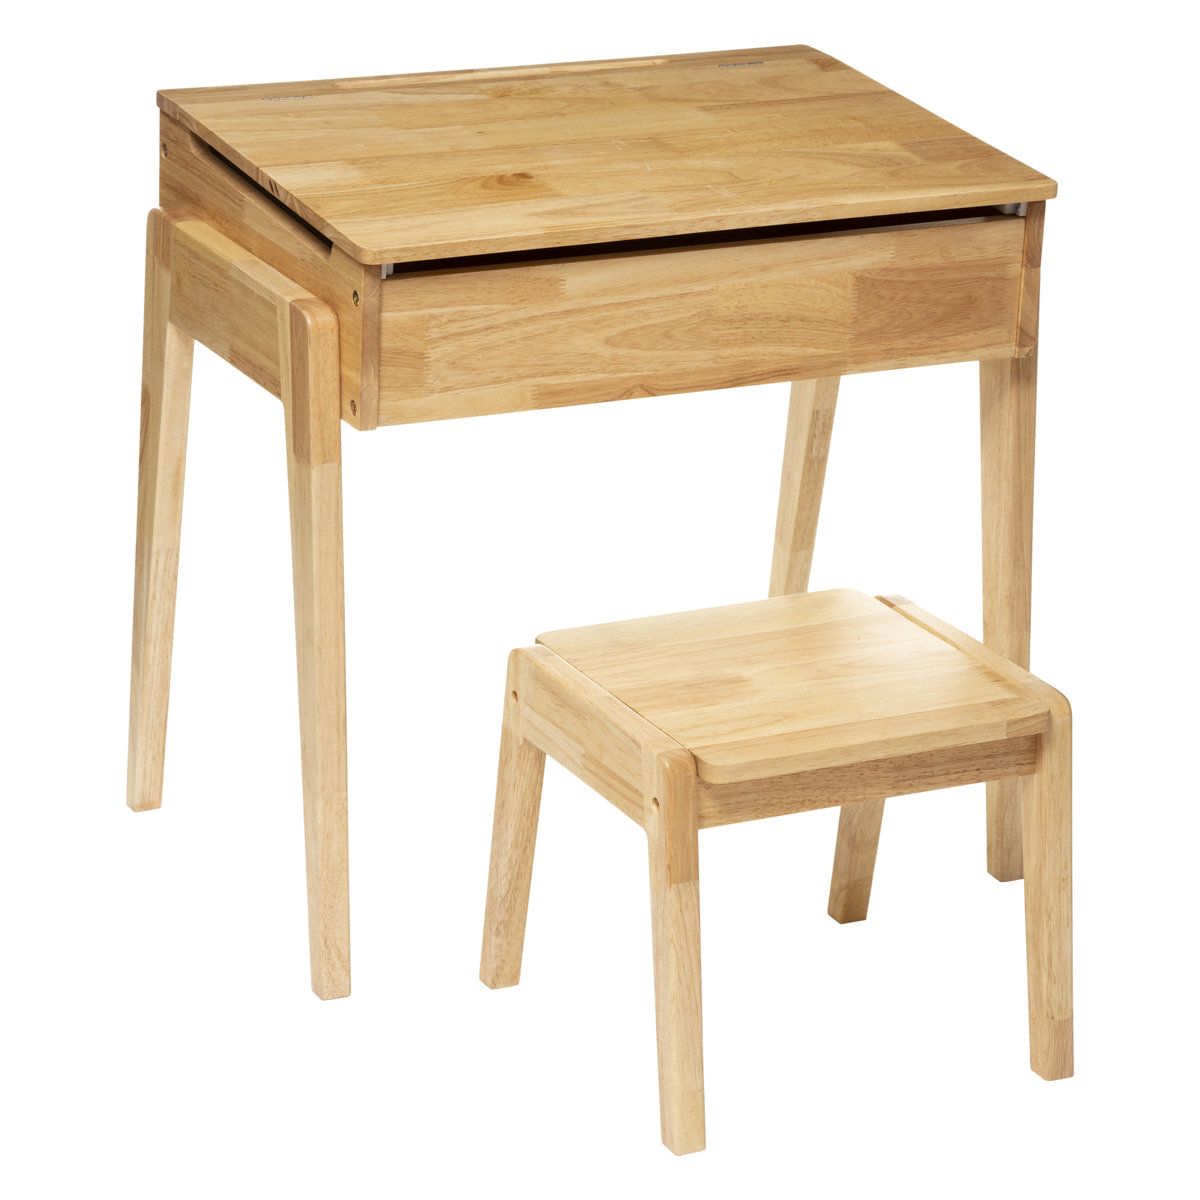 Atmosphera for kids Dětský psací stůl s úložným prostorem + taburet, 2v1 - EMAKO.CZ s.r.o.